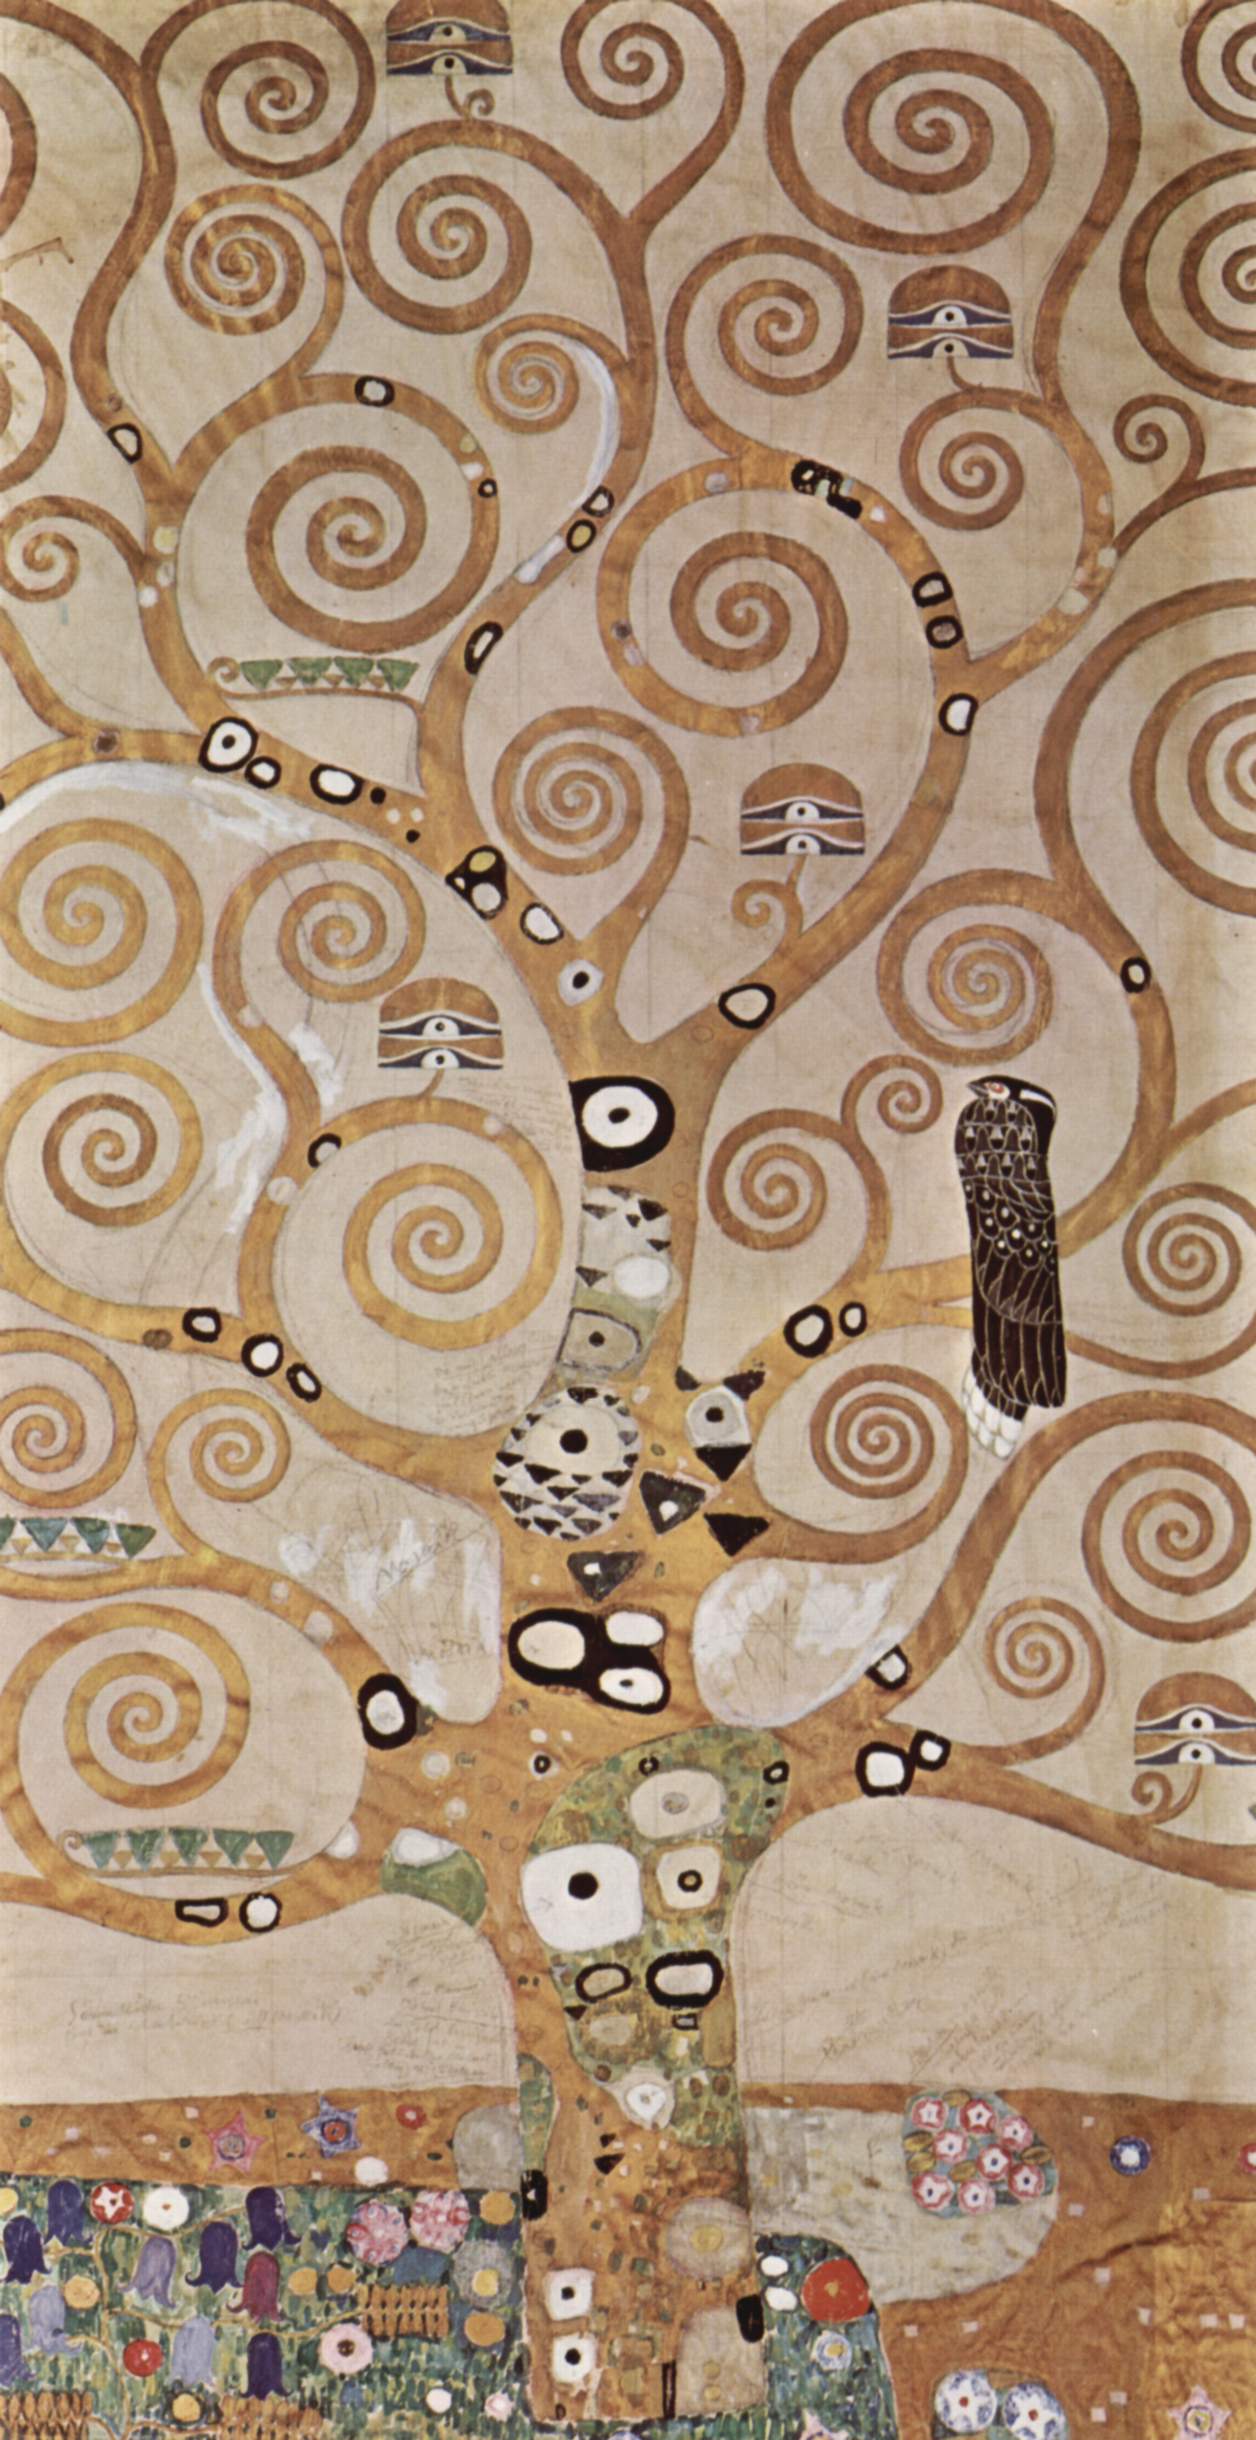 Arbre de la vie by Gustav Klimt - 1905 